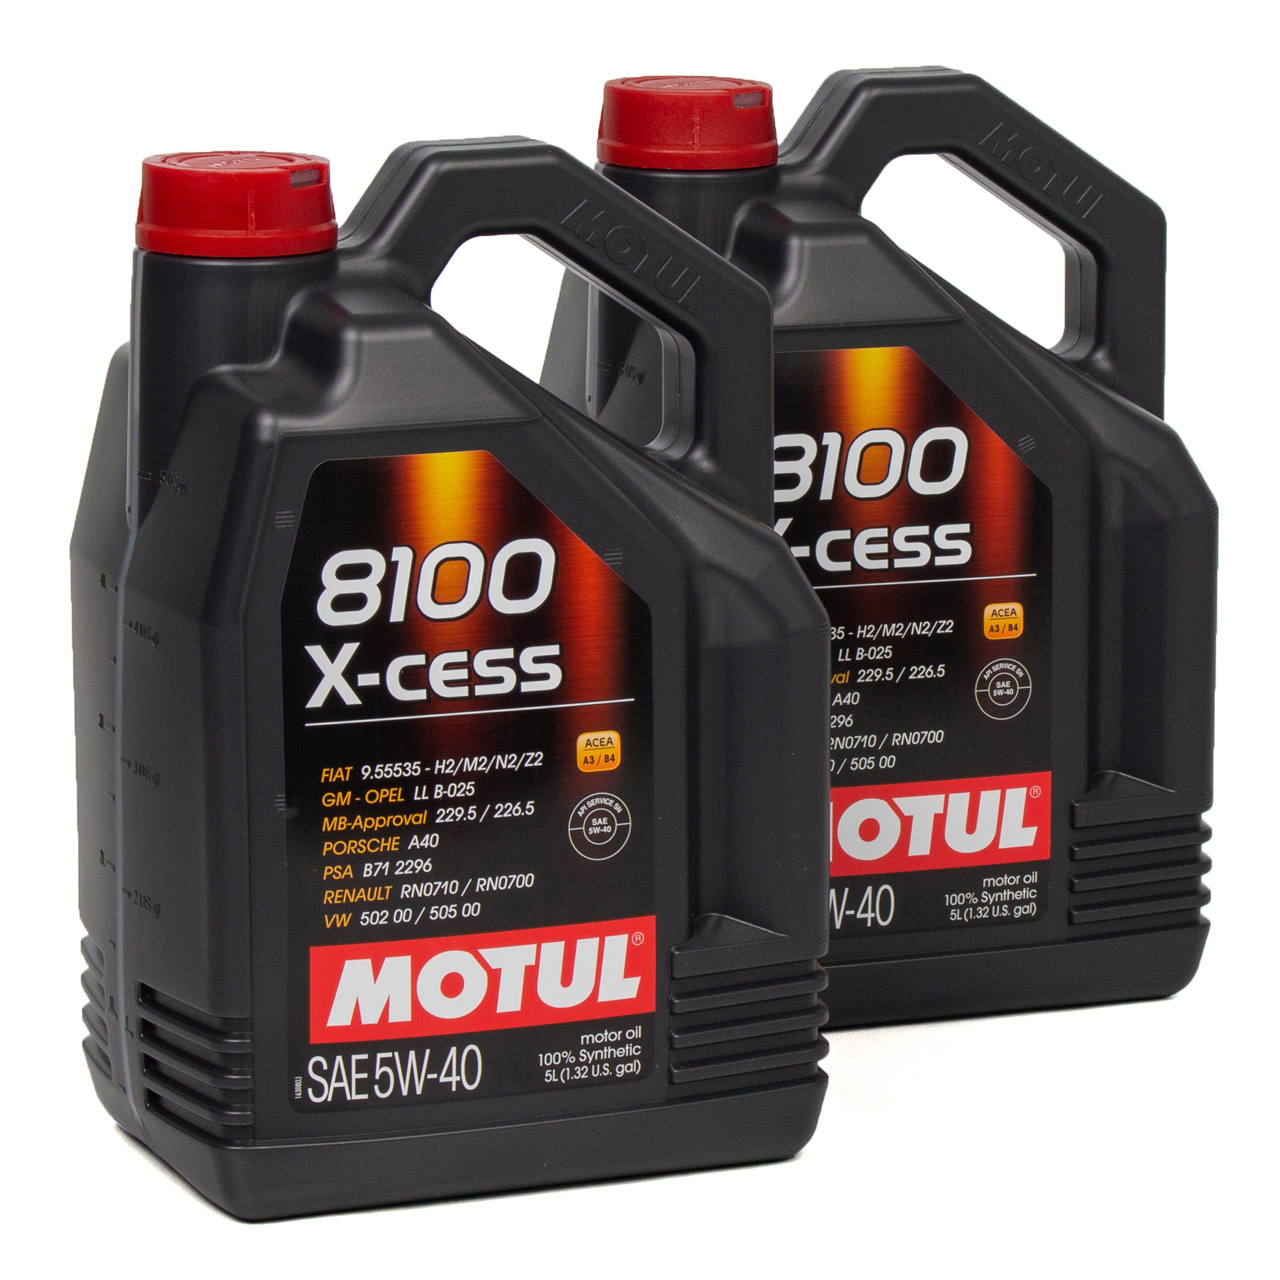 MOTUL 8100 X-cess Motoröl Öl 5W40 MB 229.5/226.5 VW 502.00/505.00 - 10L 10 Liter